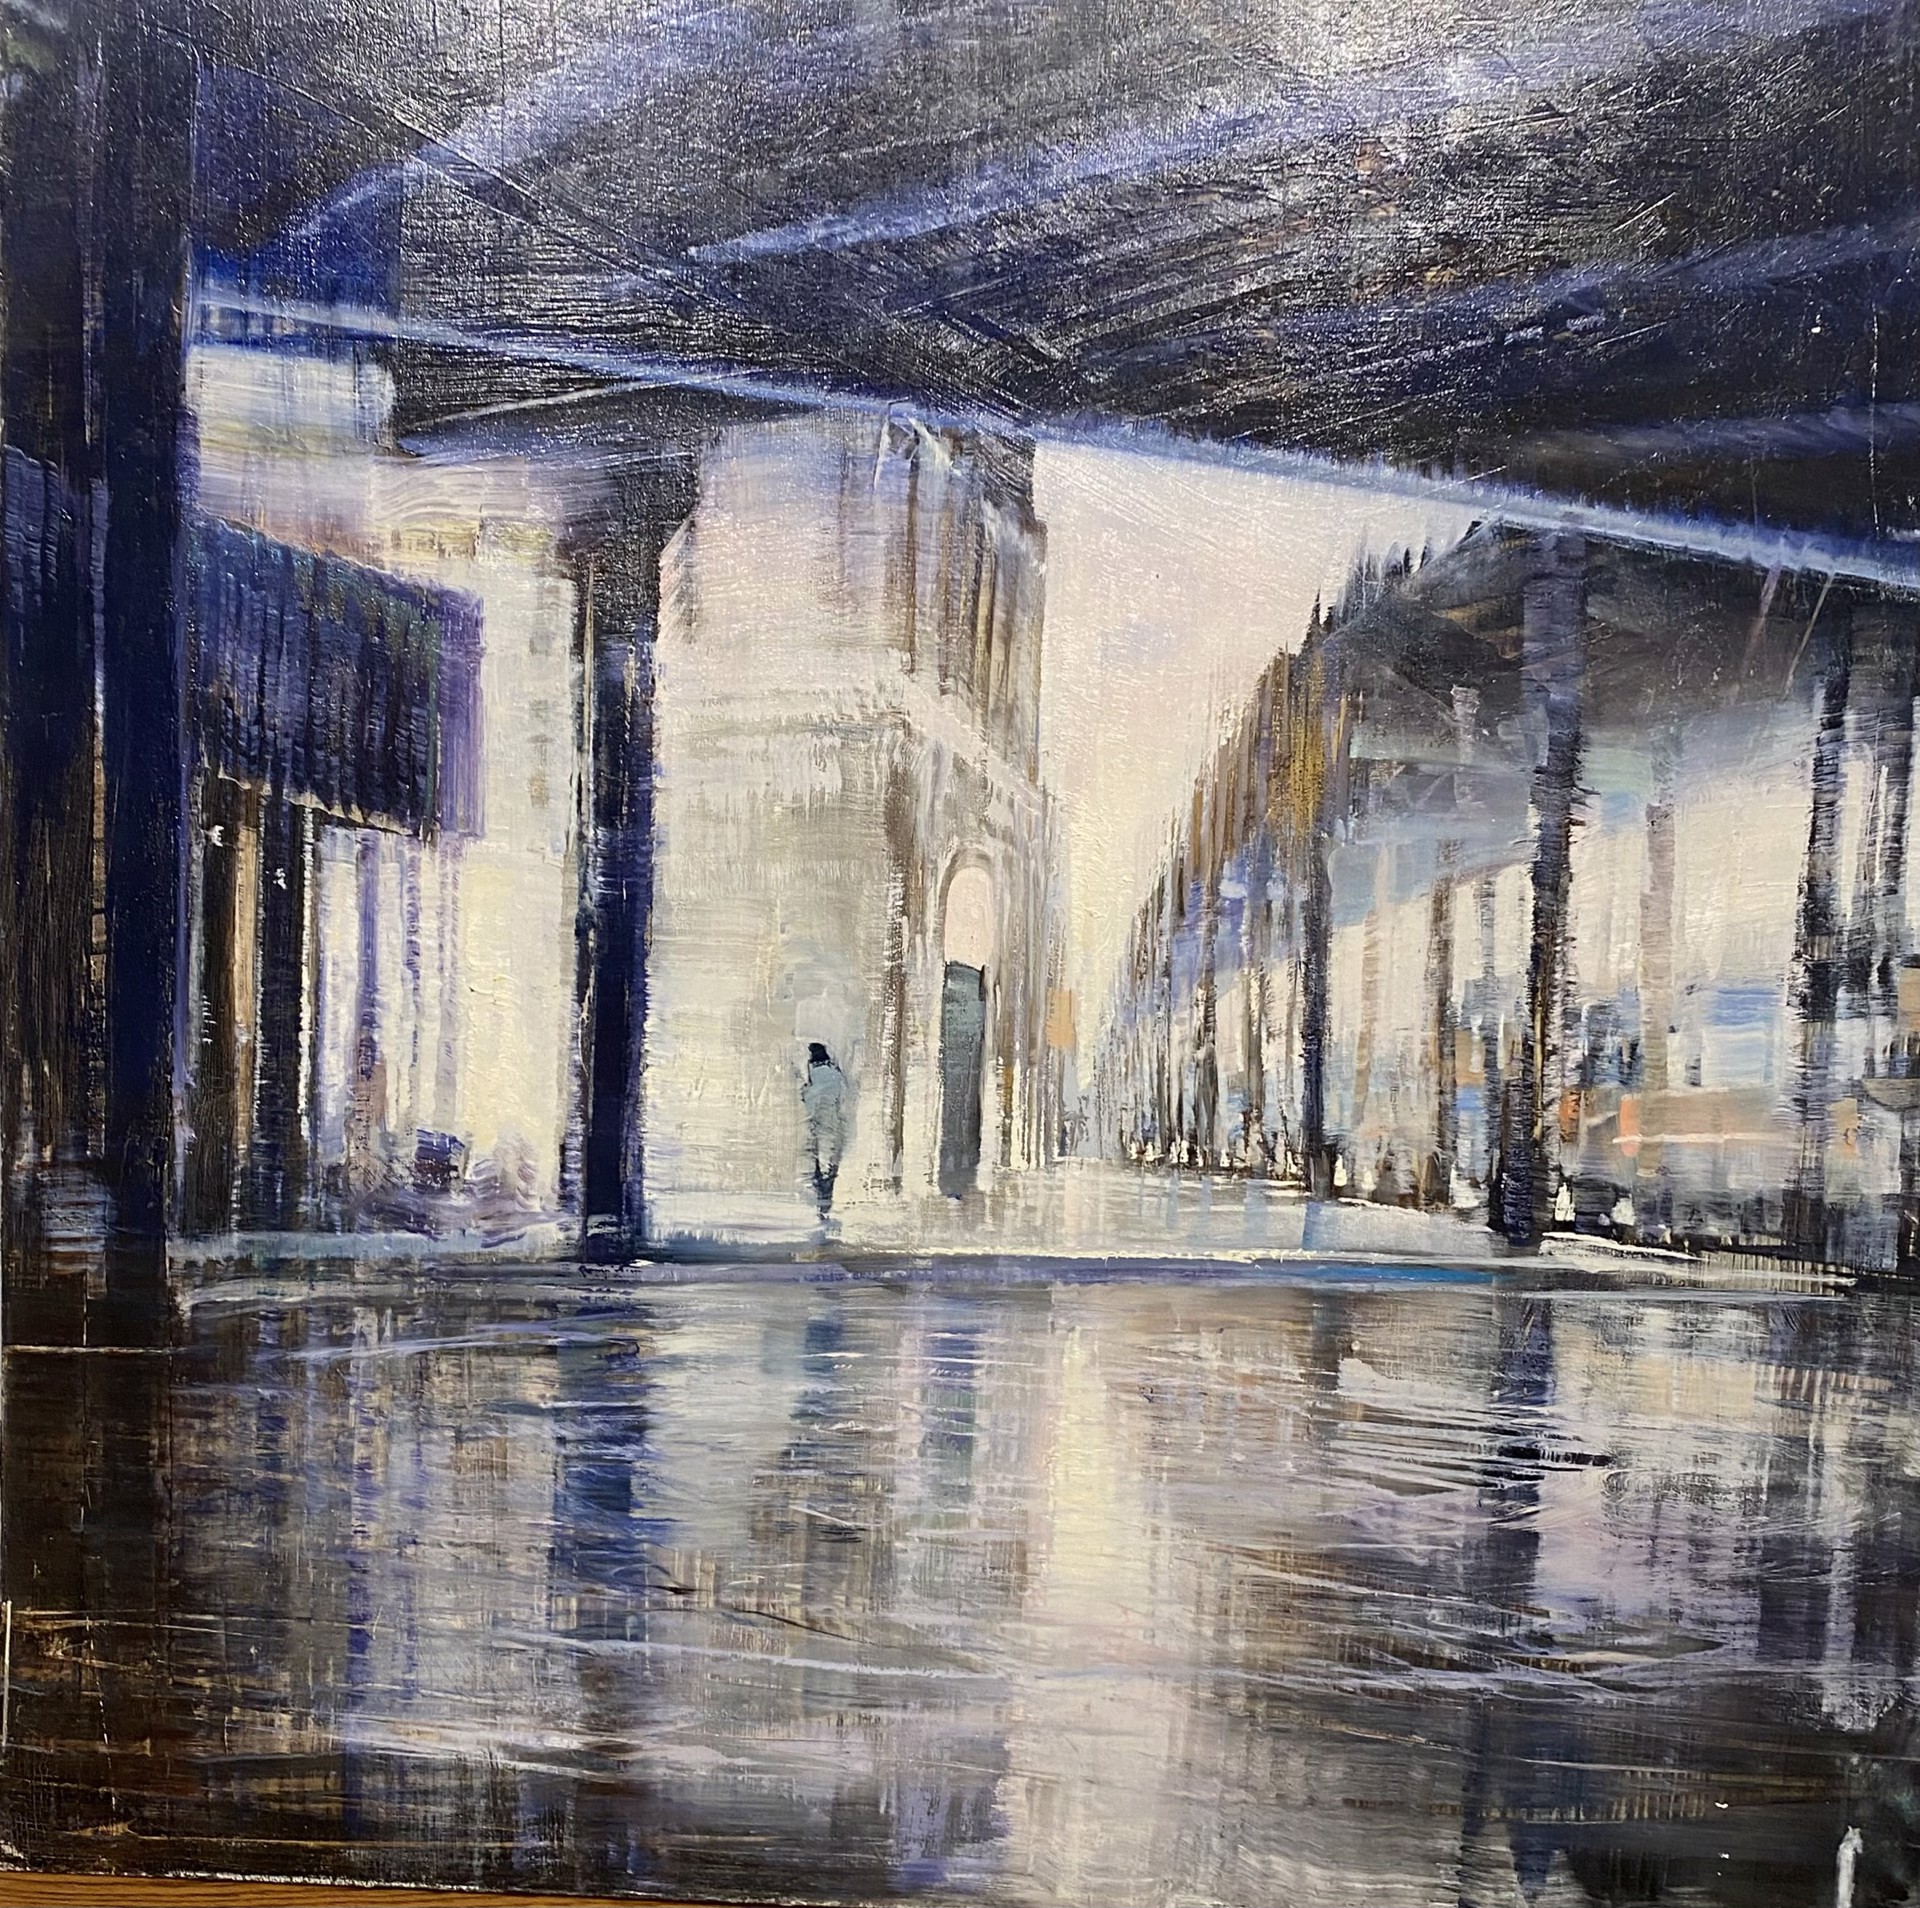 Under the Elevated in Rain by David Allen Dunlop